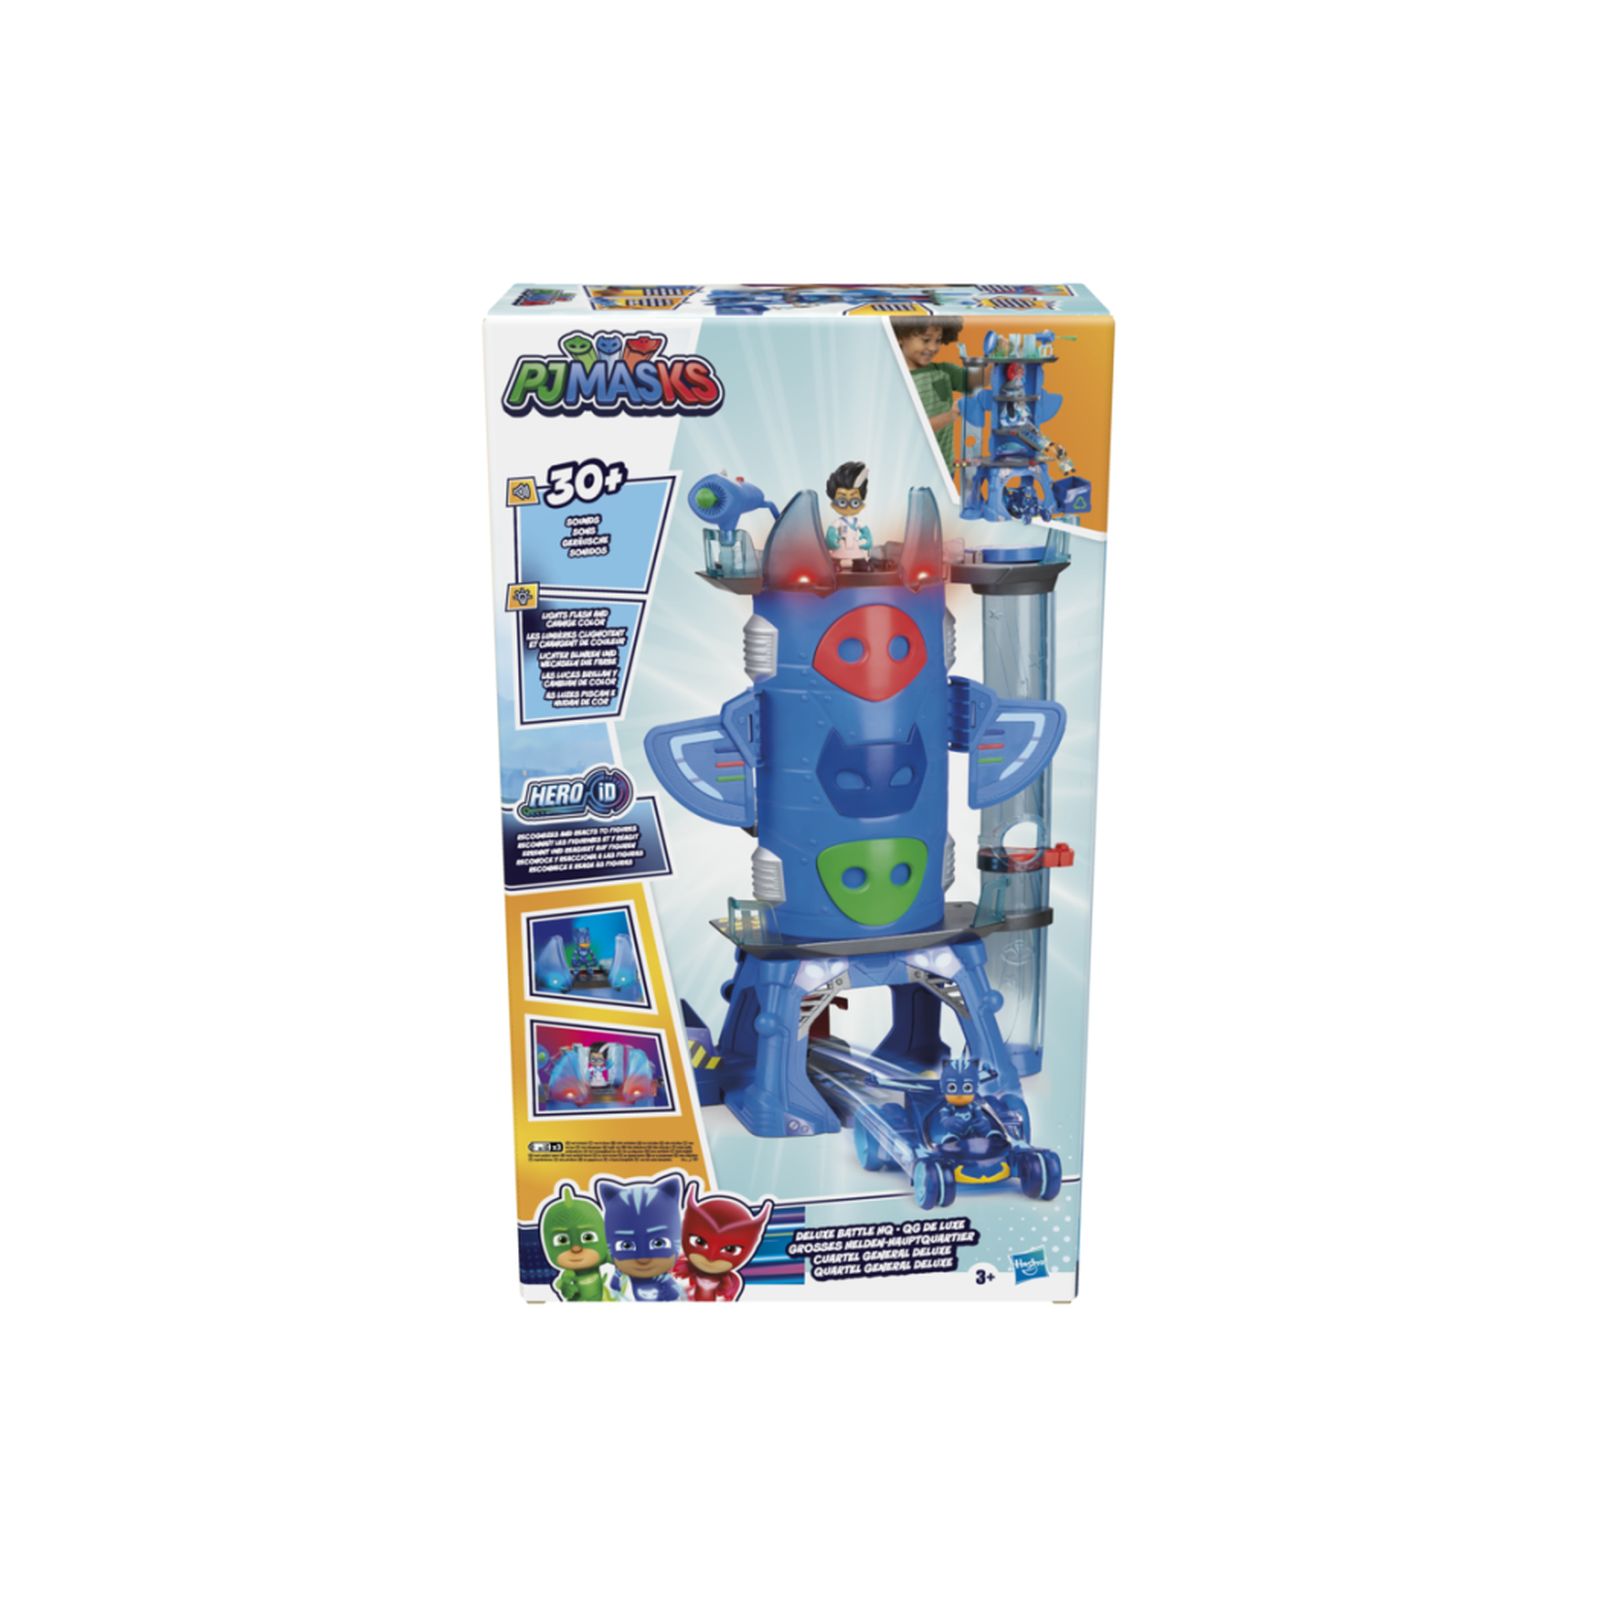 PJ Masks - Super pigiamini, 2-in-1 HQ, playset sede centrale e razzo  giocattolo per età prescolare - Hasbro - Cartoons - Giocattoli